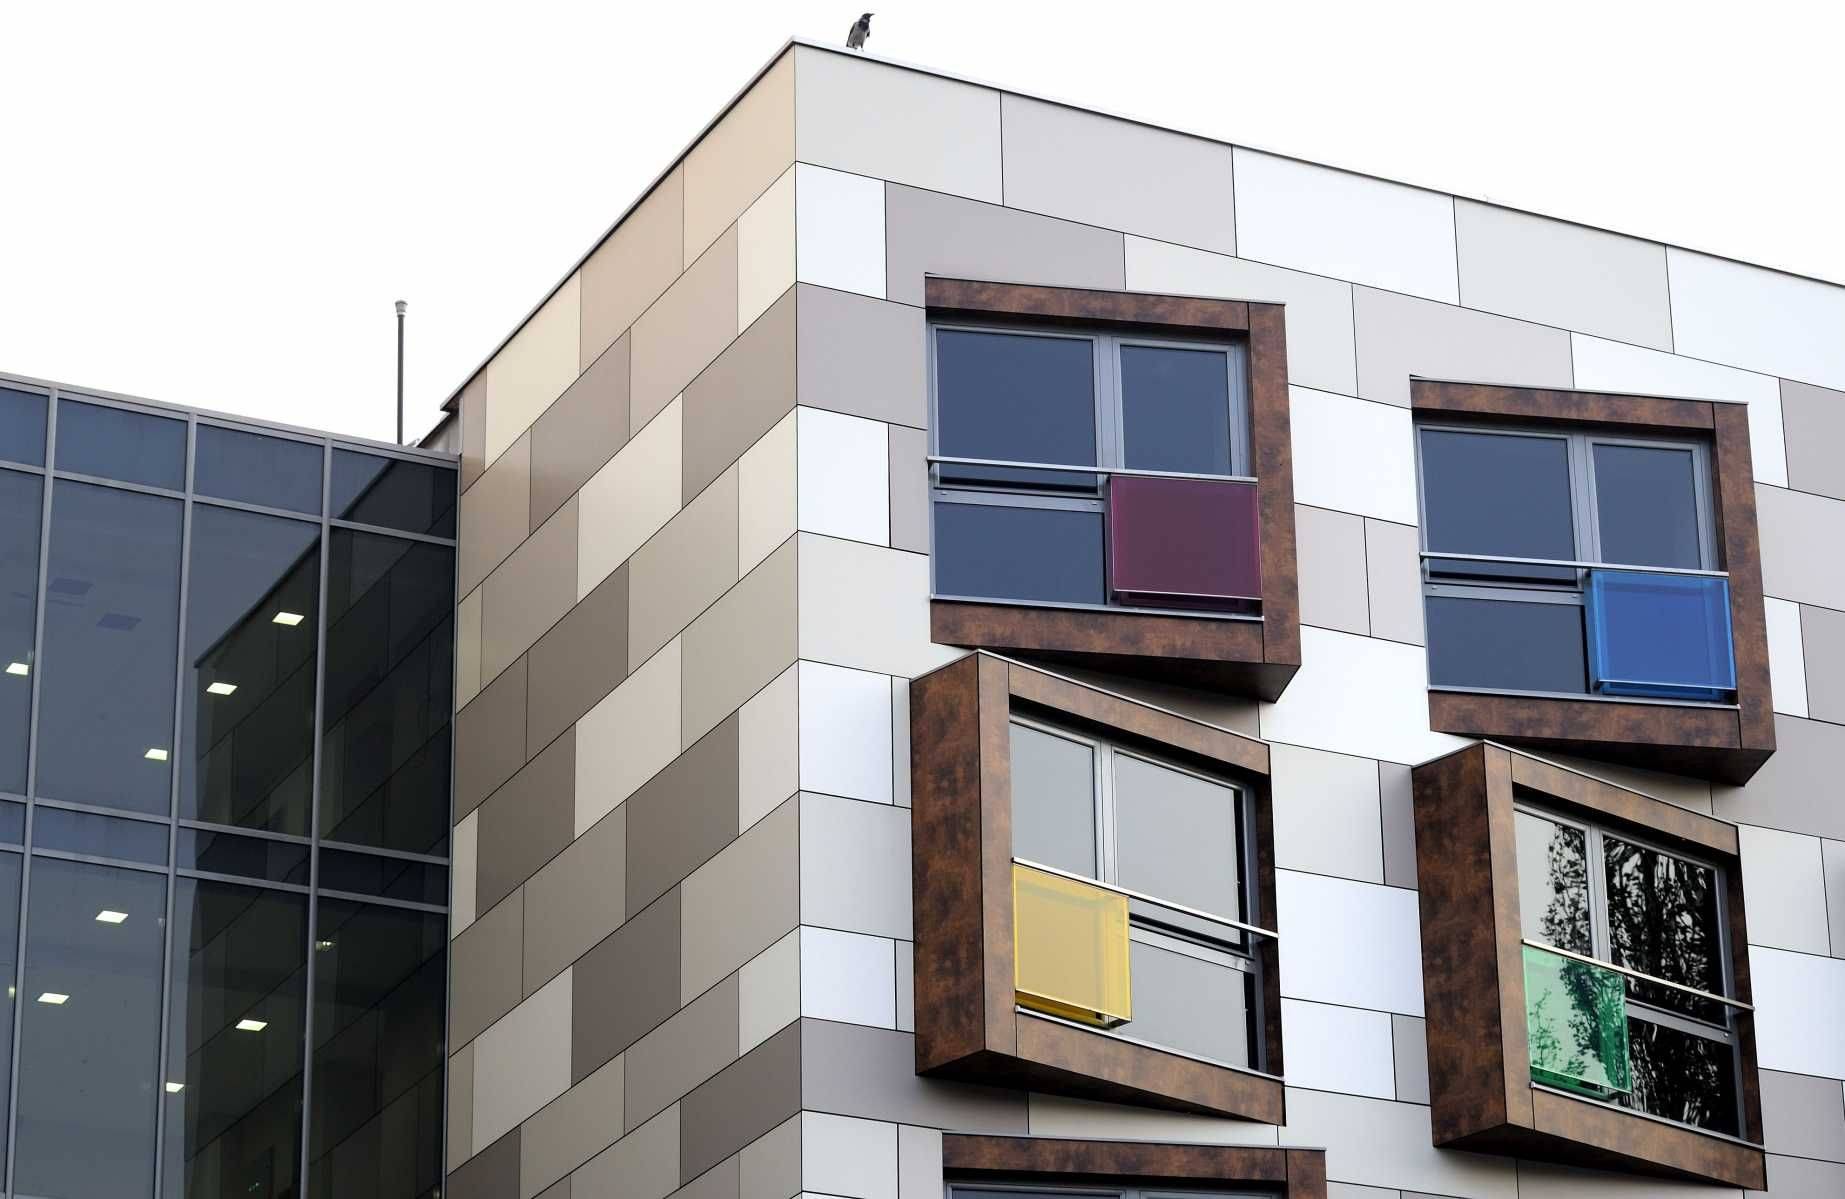 Керамогранитная плитка для фасадов: плюсы и минусы, технология облицовки дома керамогранитом размером 600х600мм